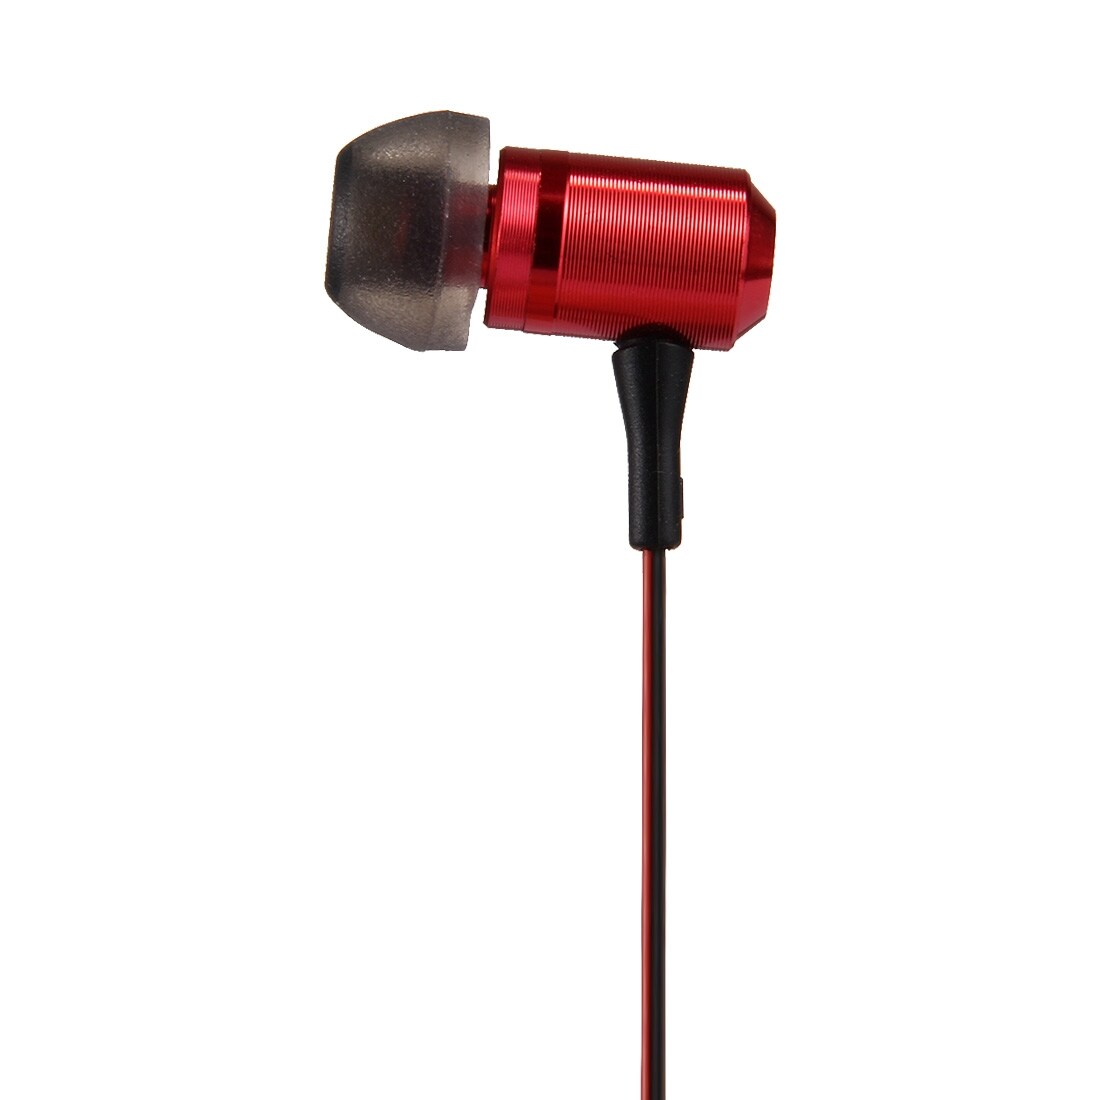 Røde Trådløse HiFi høretelefoner iPhone / Android med Mic